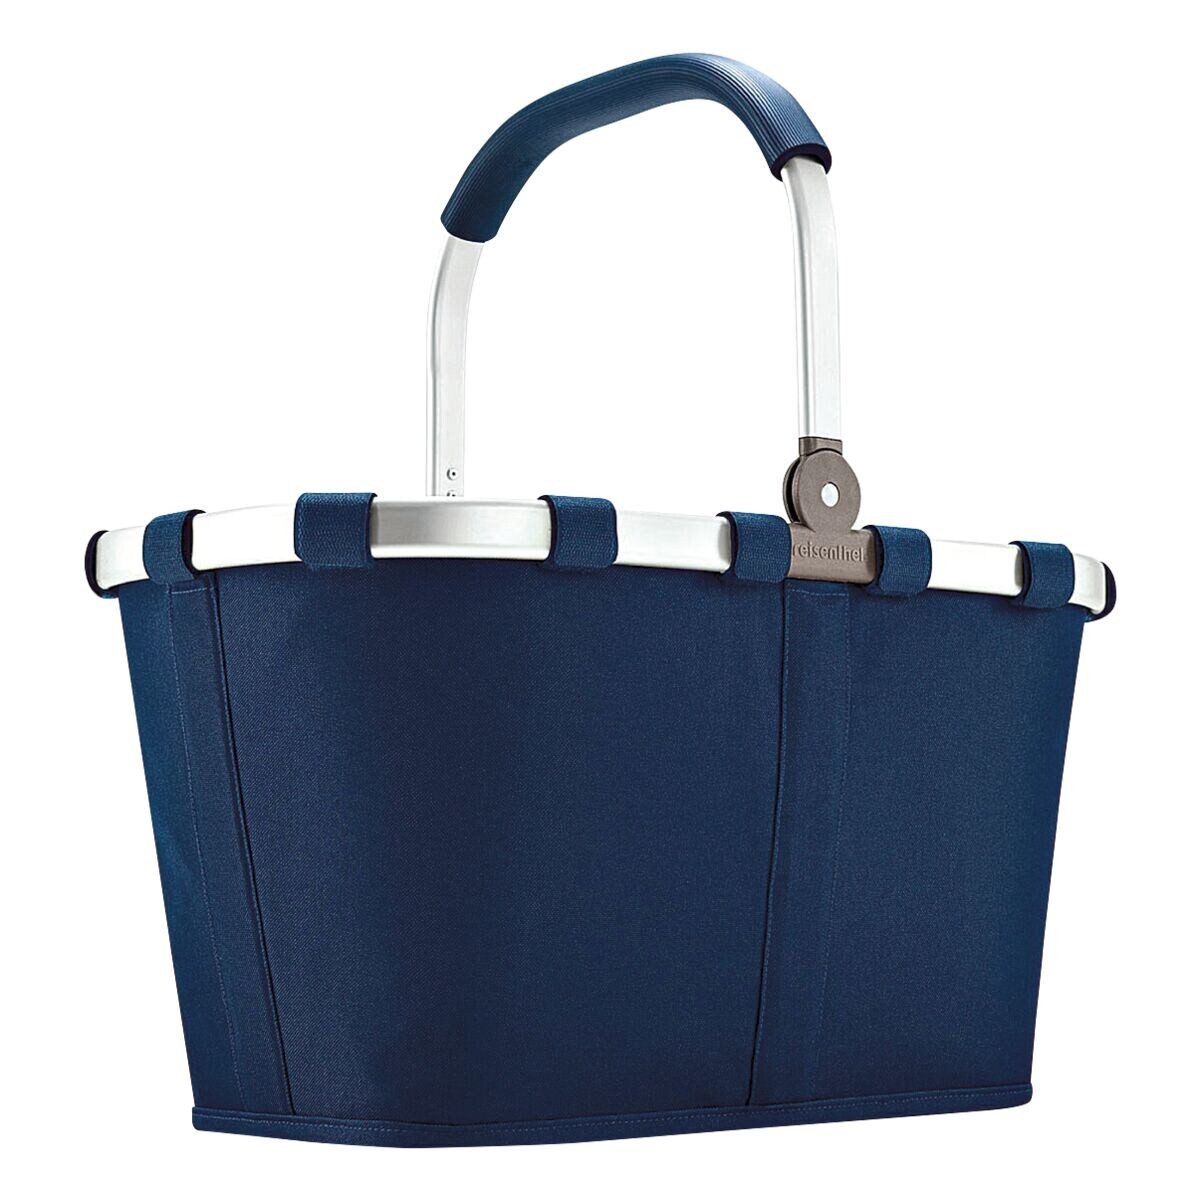 REISENTHEL® Einkaufskorb carrybag navy, zusammenklappbar, Innentasche mit Reißverschluss